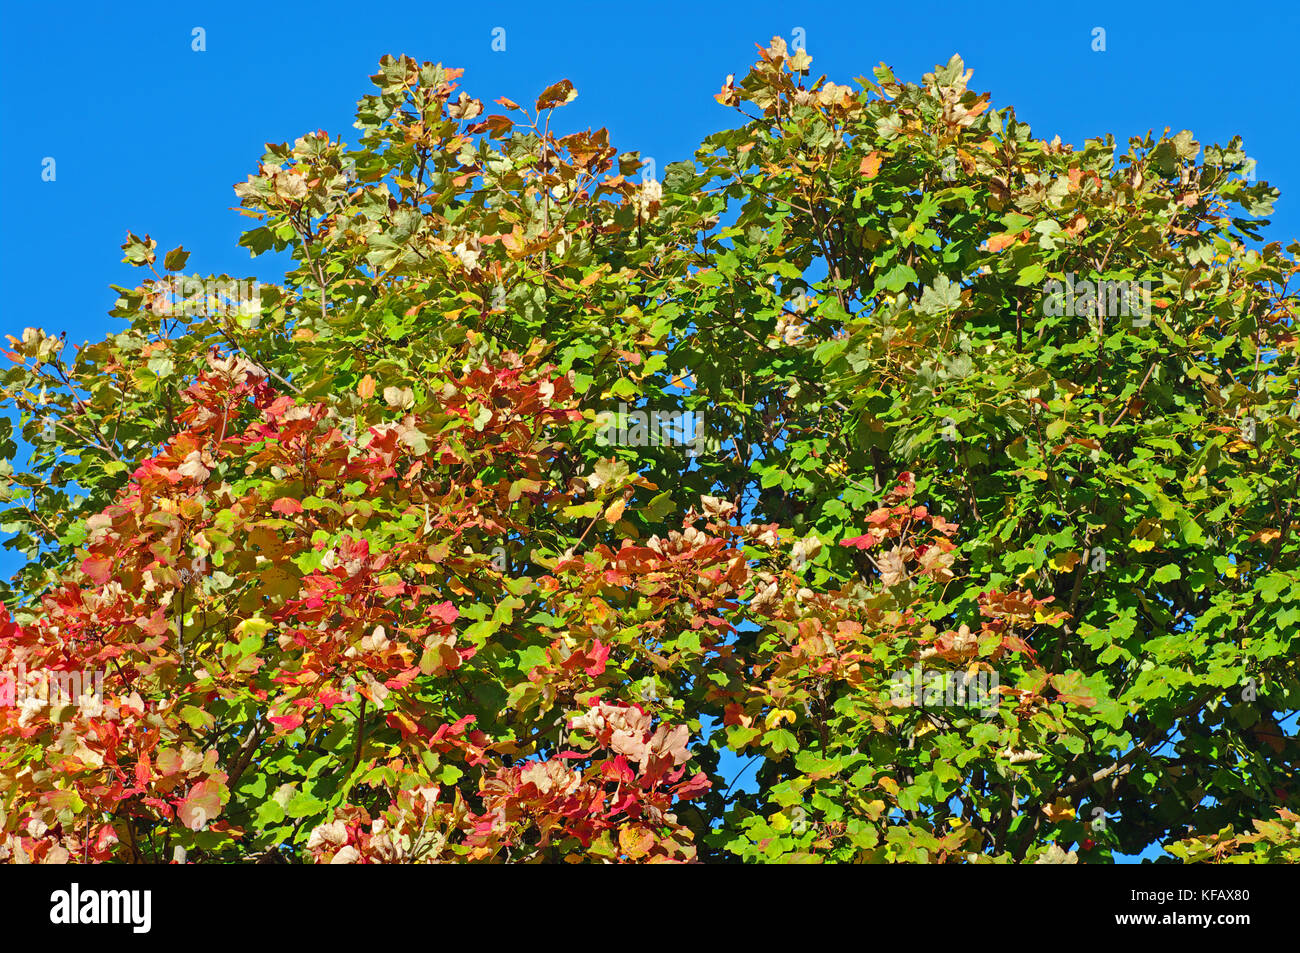 Les couleurs de l'automne : arbres de la montagnes aurunci (monts Aurunci), Italie Banque D'Images